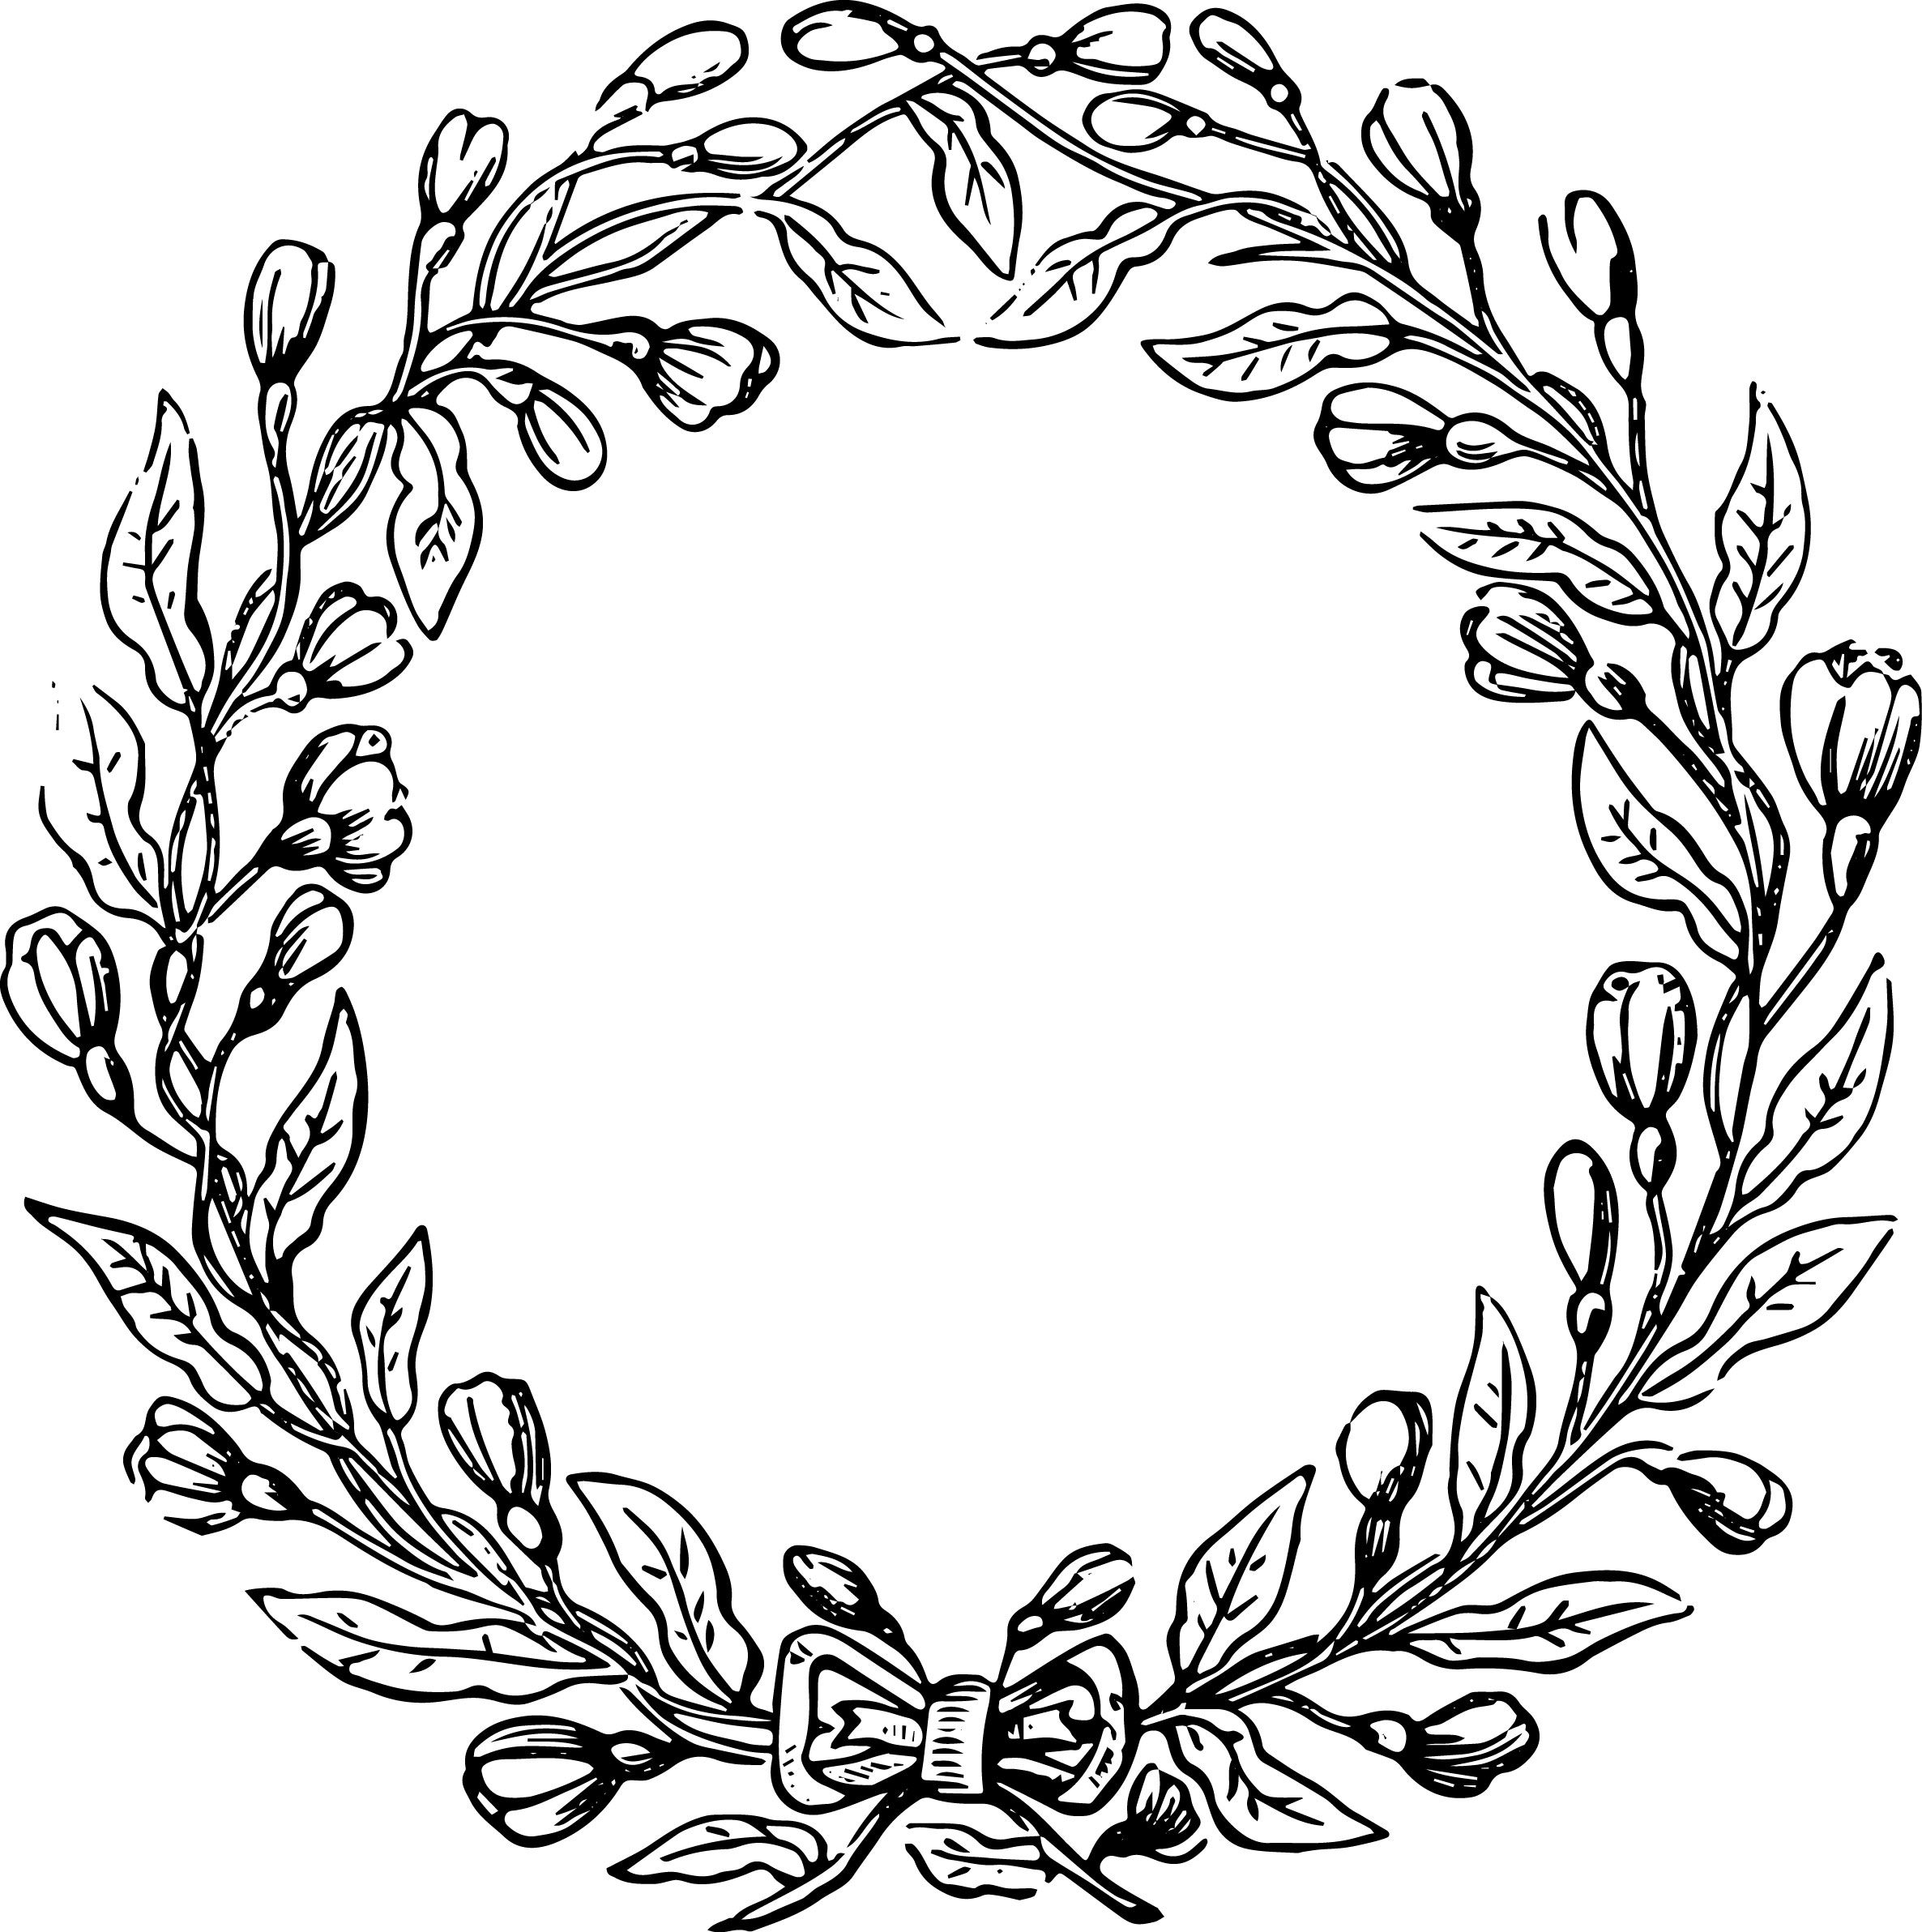 Laurel Wreath Clipart | Free Download Clip Art | Free Clip Art ...